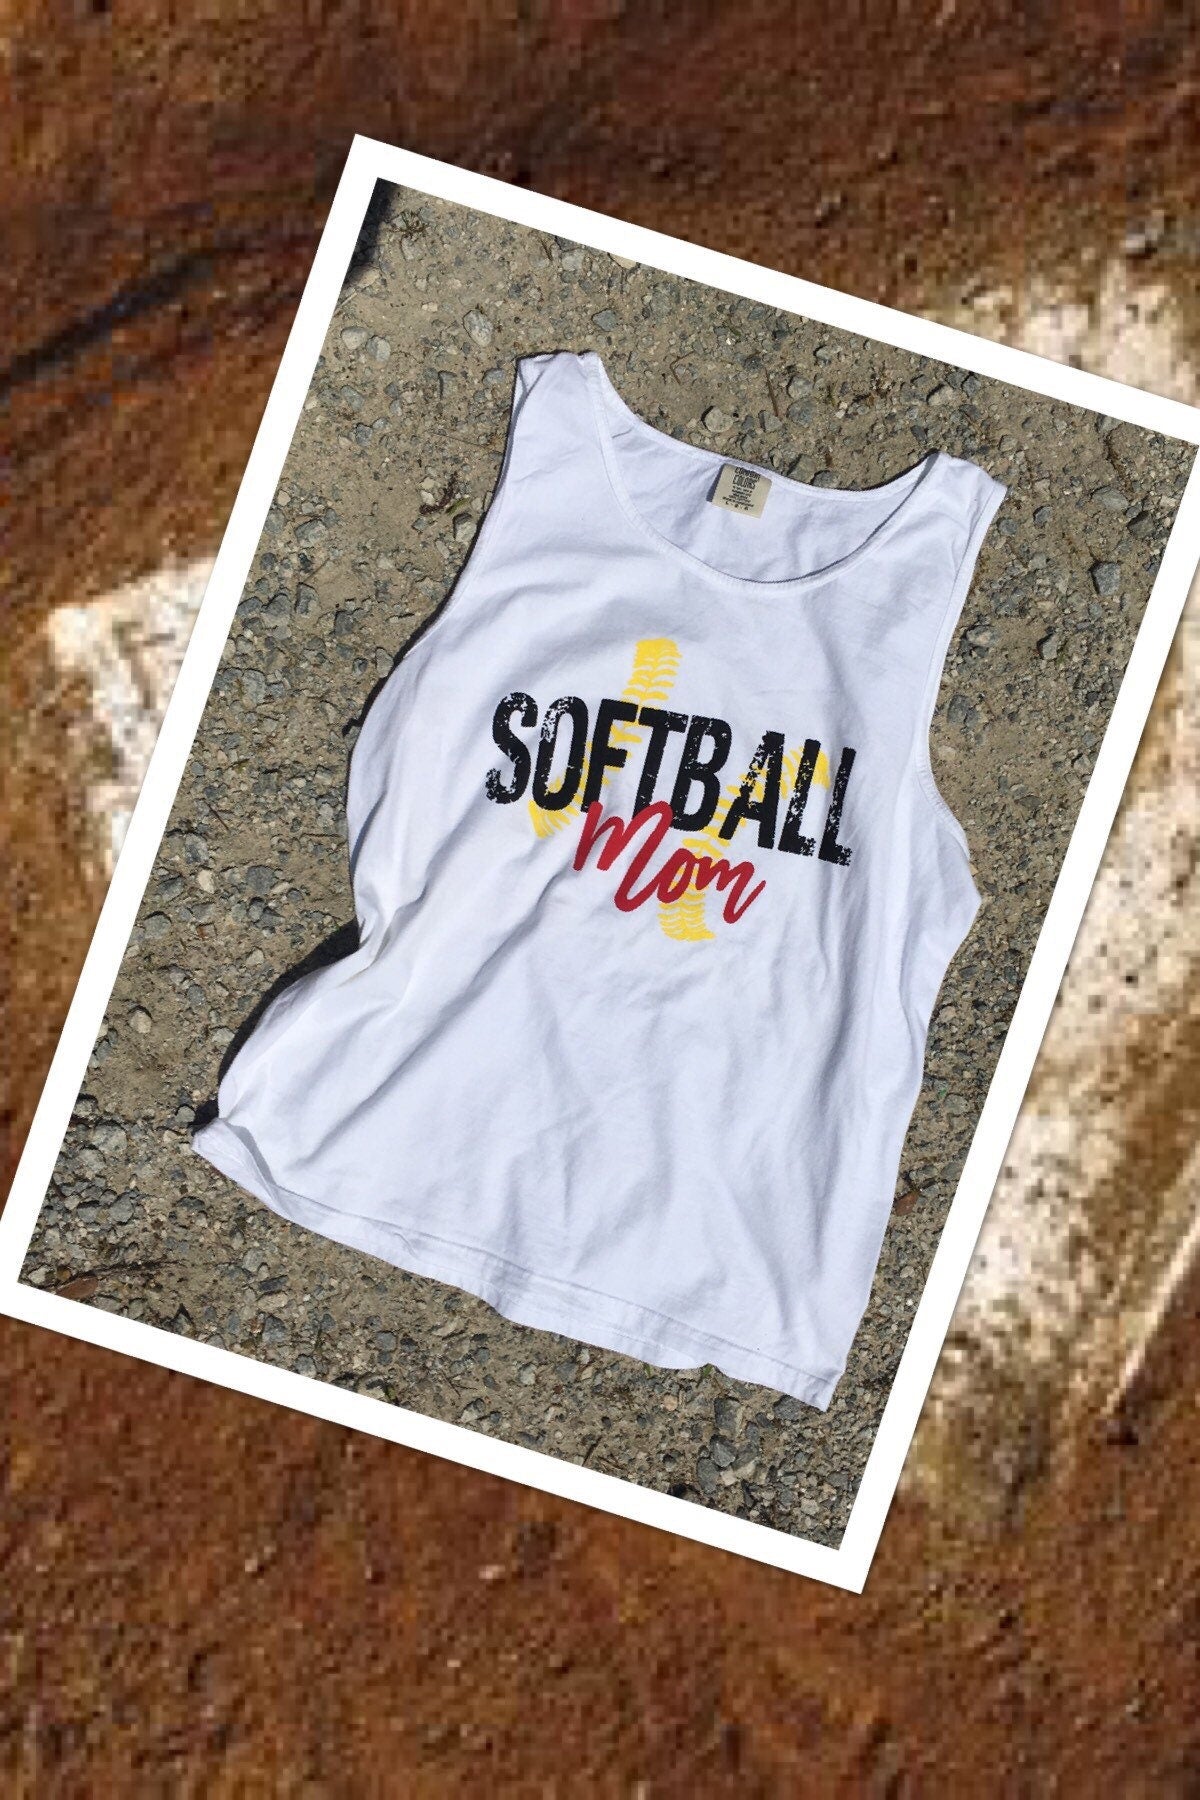 Softball mom t shirt